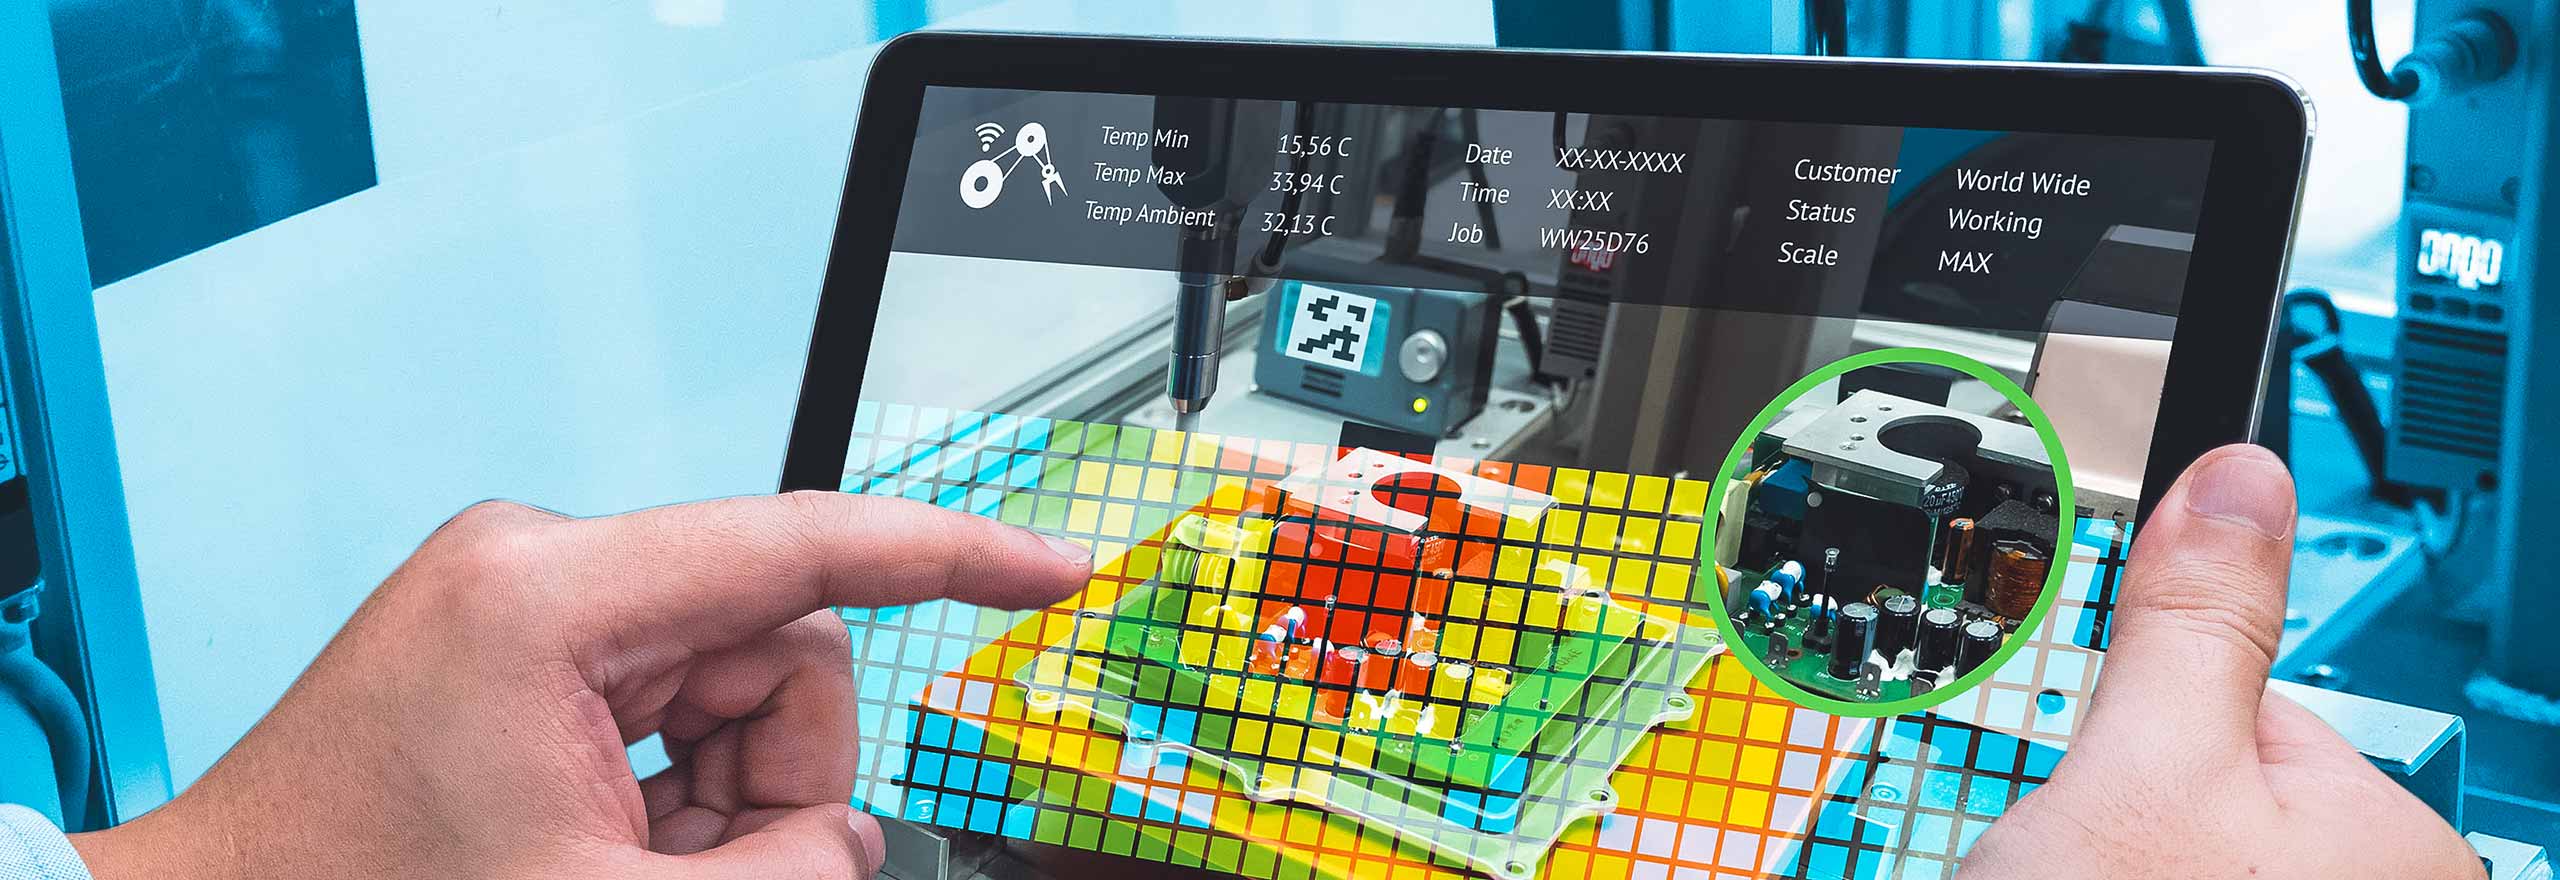 Immagine raffigurante il personale di un impianto di produzione con un'immagine di realtà aumentata su un tablet